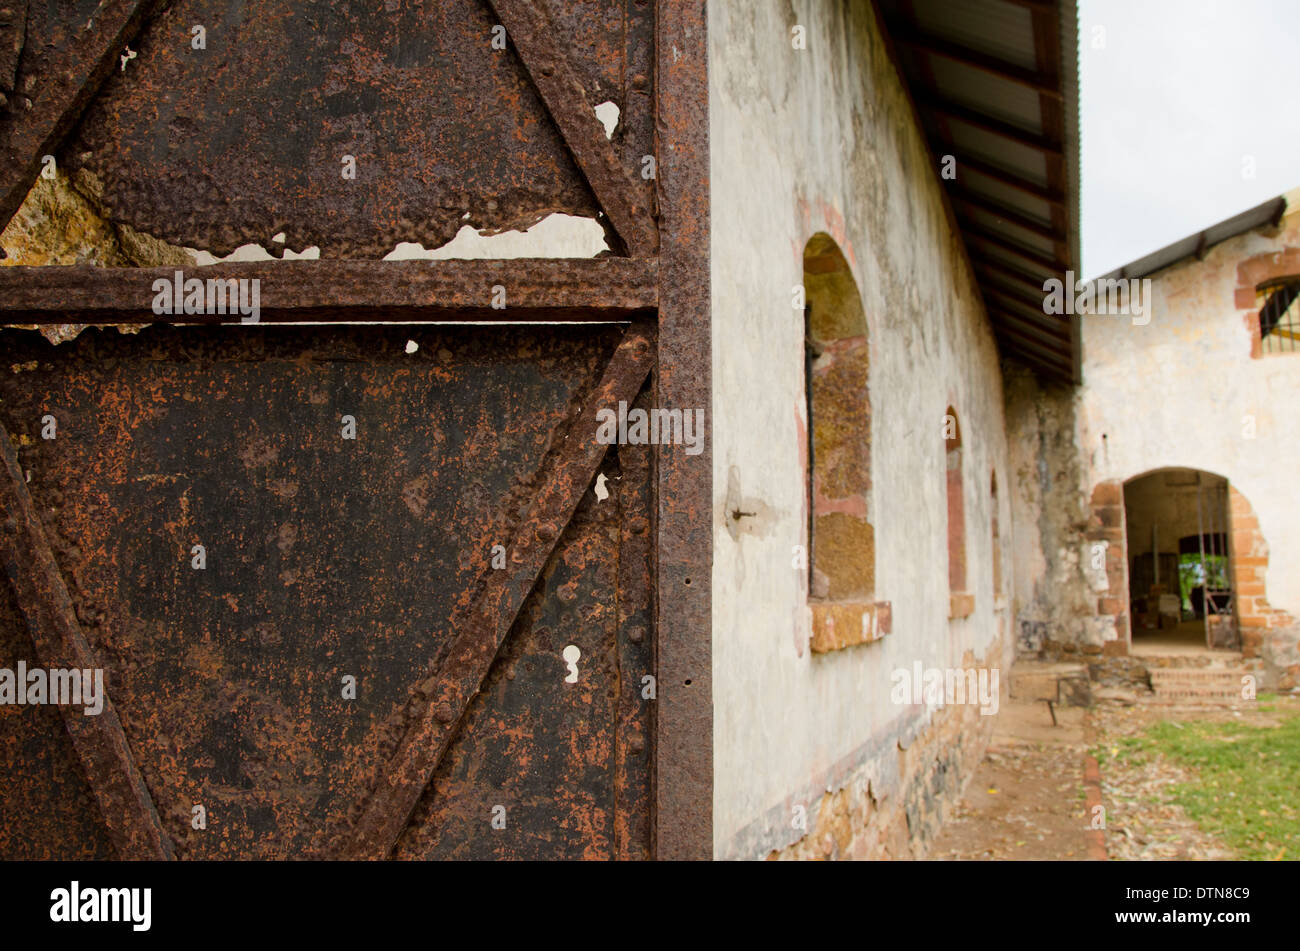 Guiana francese, salvezza isole. Ile Royale, rovine del famigerato colonia penale. Prigioniero di quarti. Foto Stock